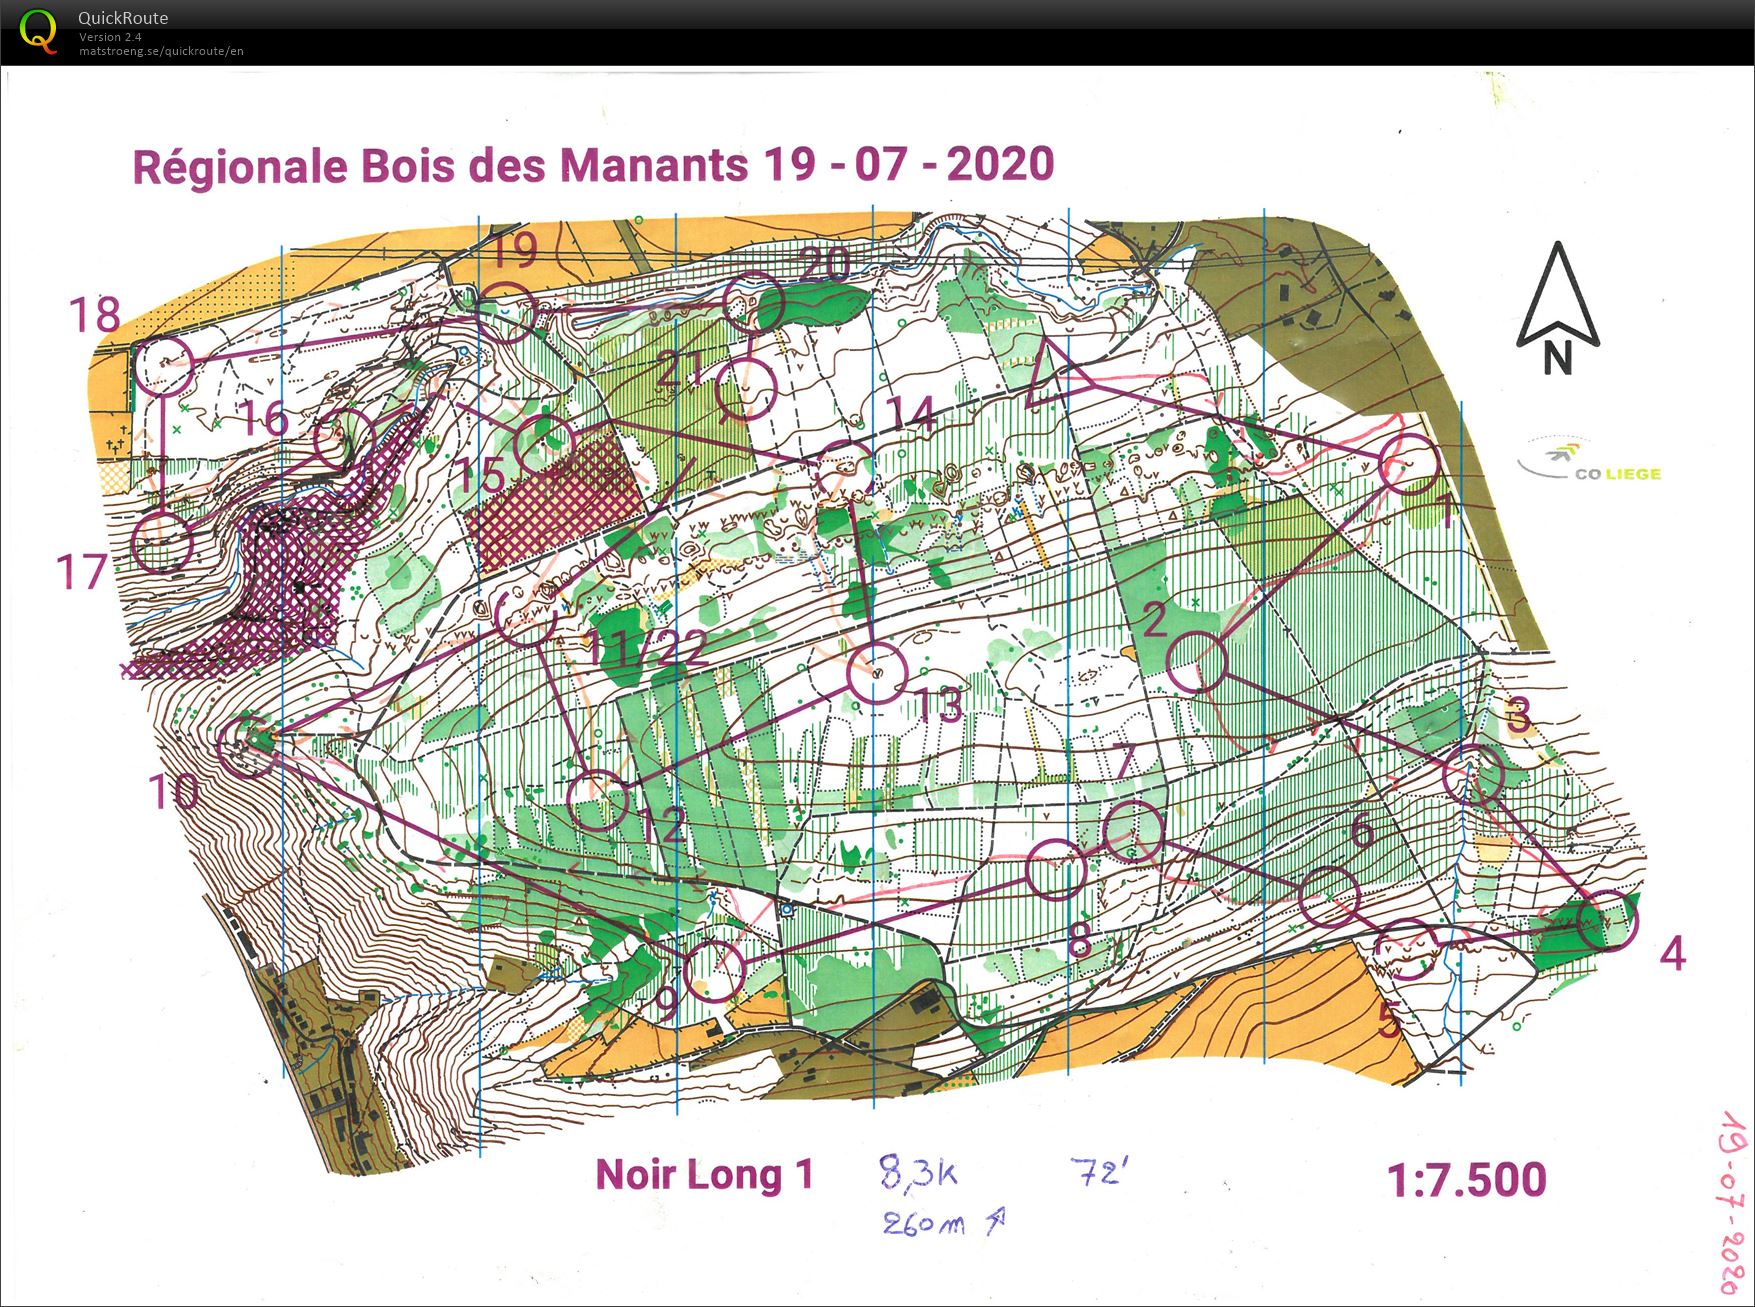 Regionale Bois des Manants (1/2) (2020-07-19)